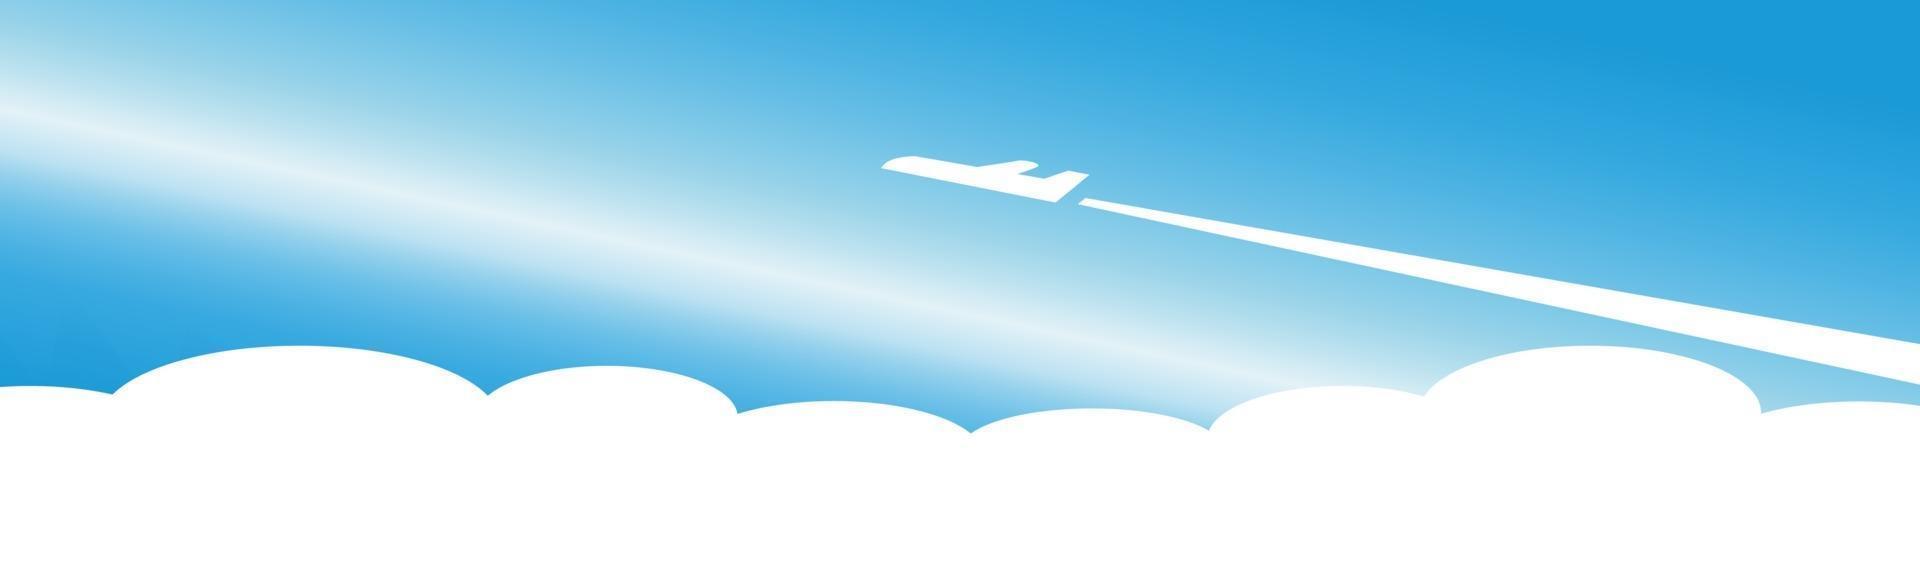 silhouet van een vliegtuig dat opstijgt op een achtergrond van blauwe n - vector